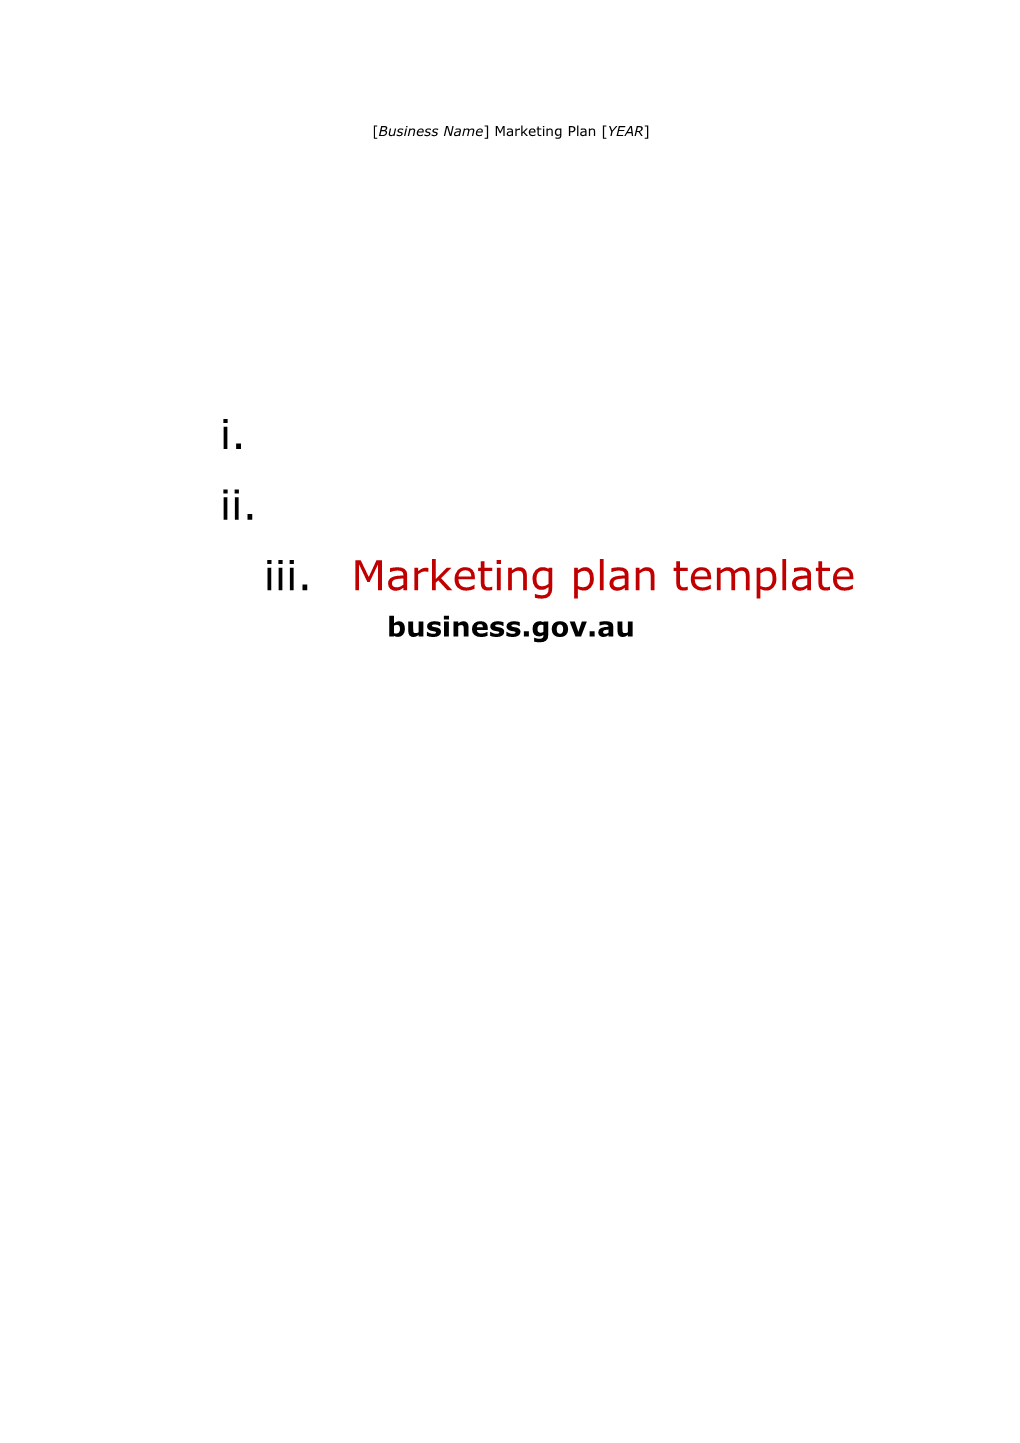 Marketing Plan Guide